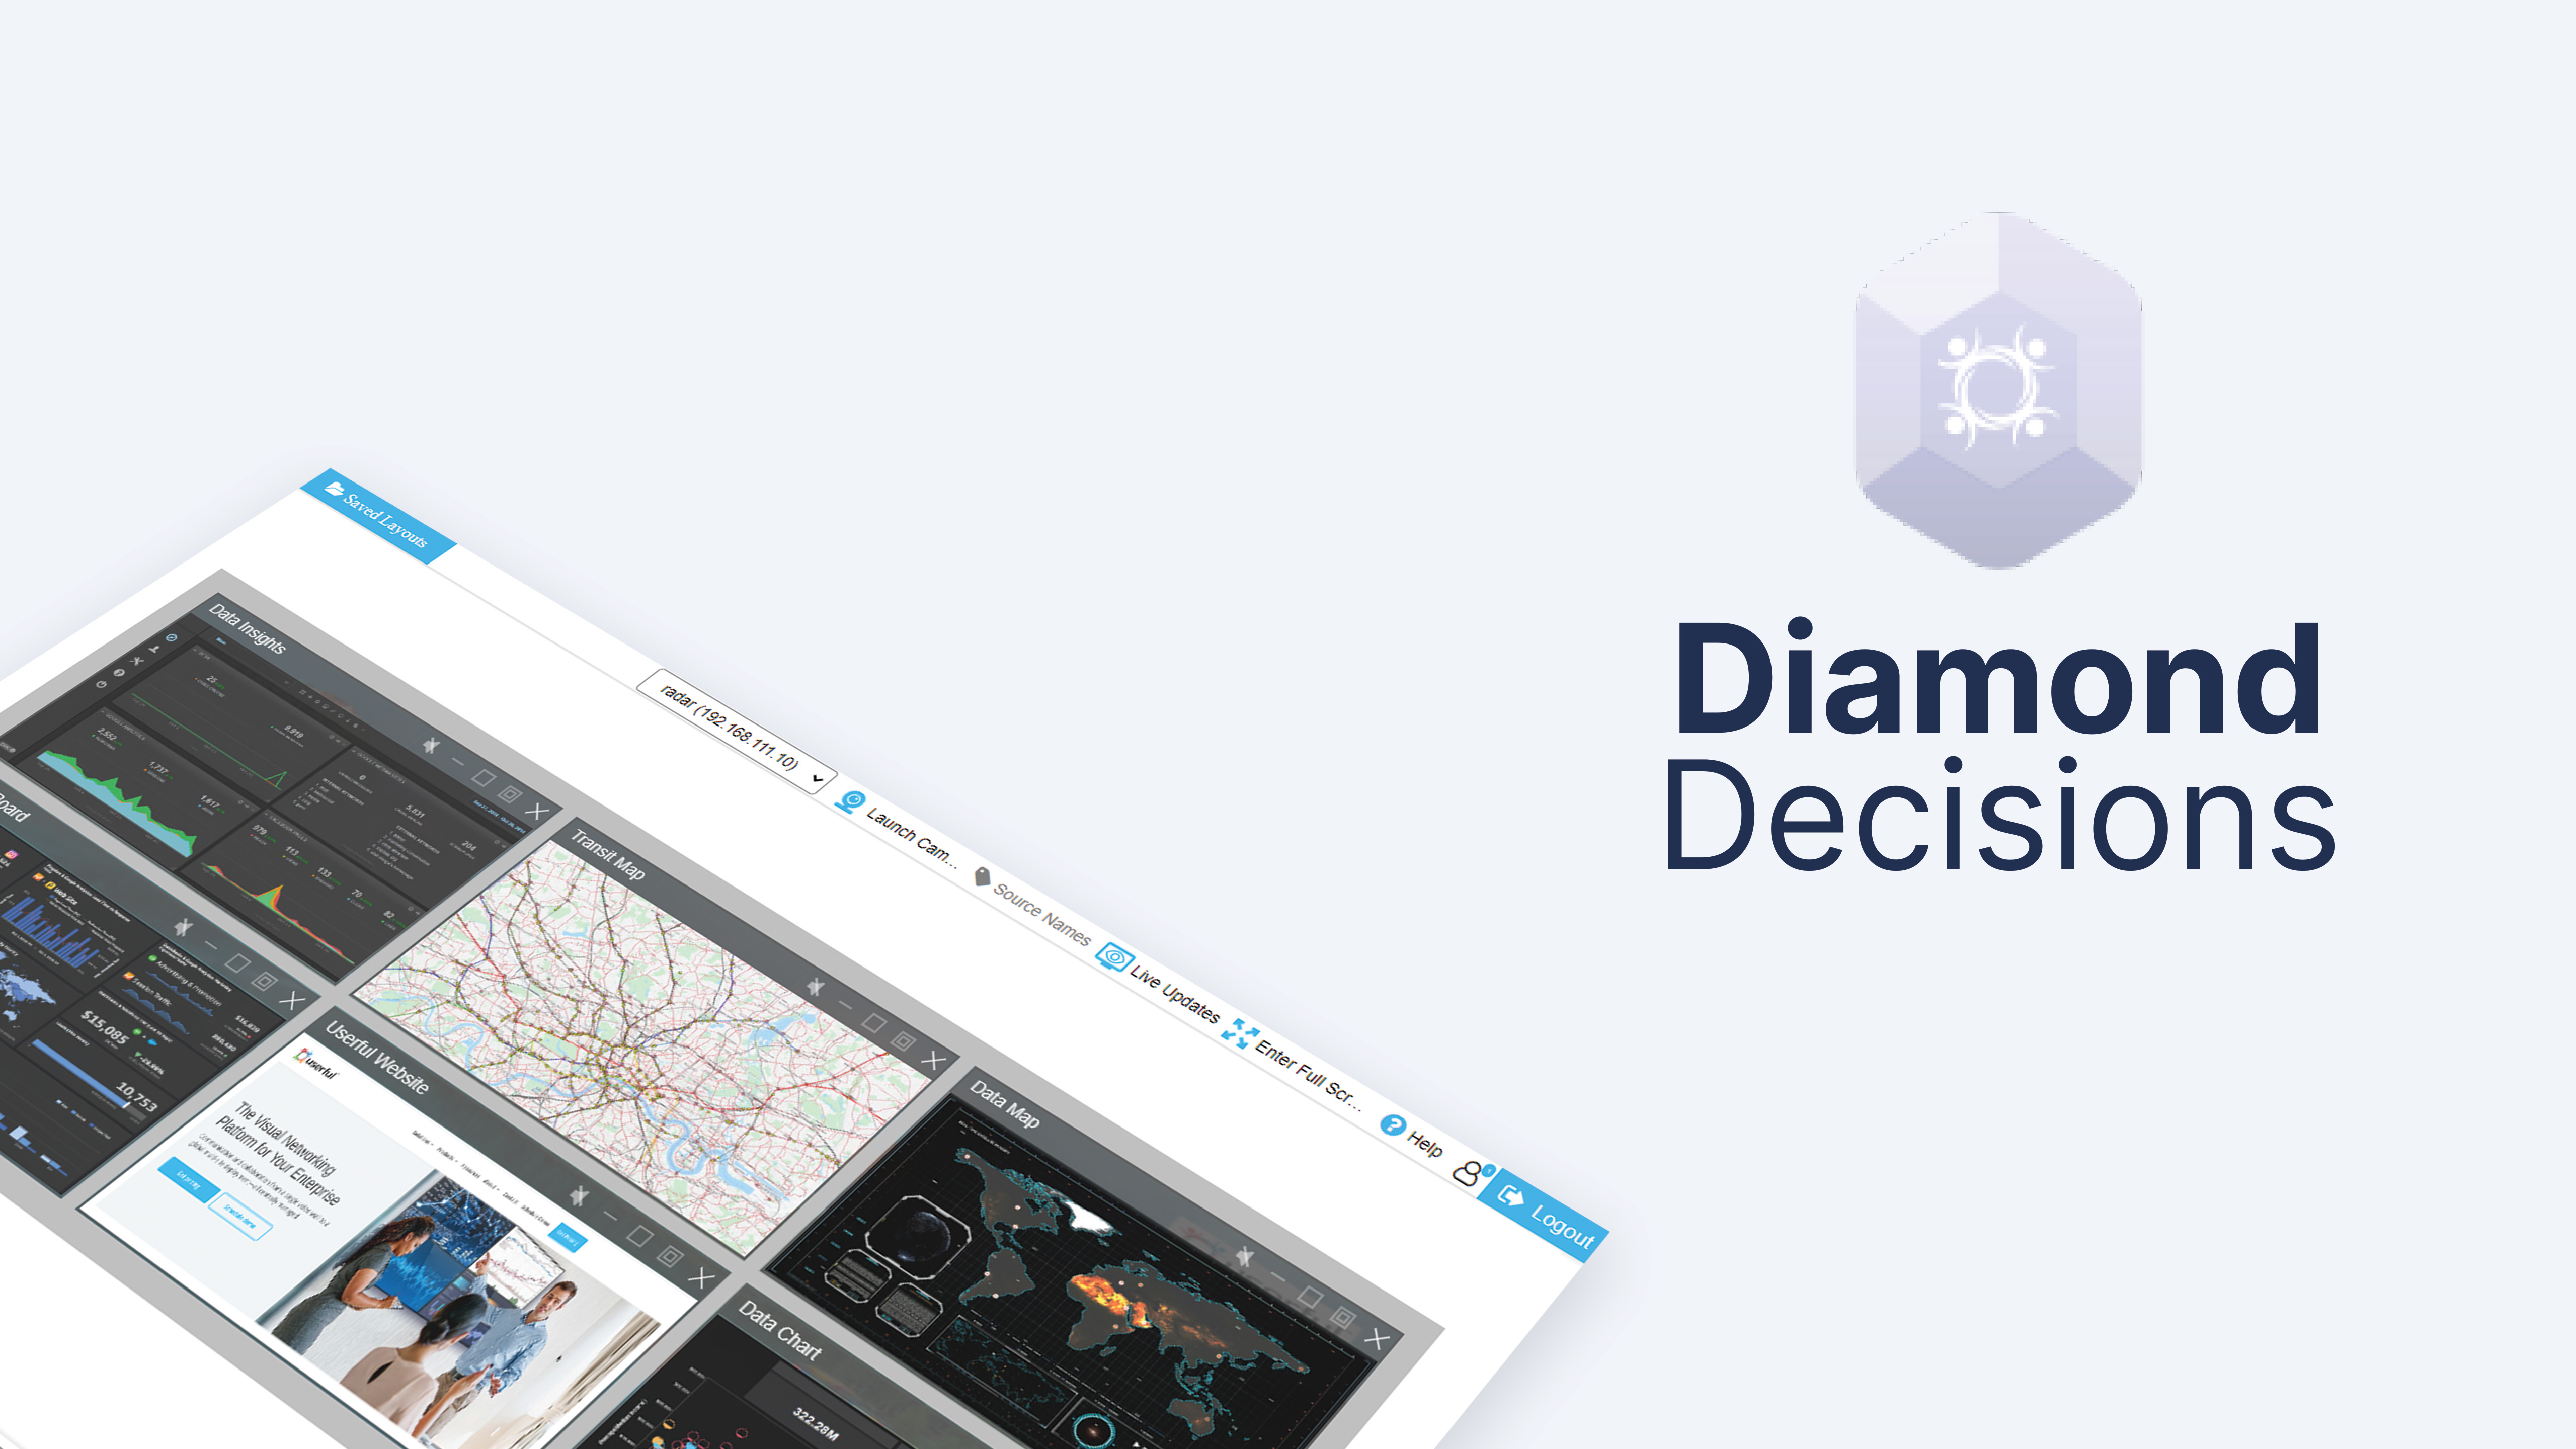 Decisiones sobre los diamantes